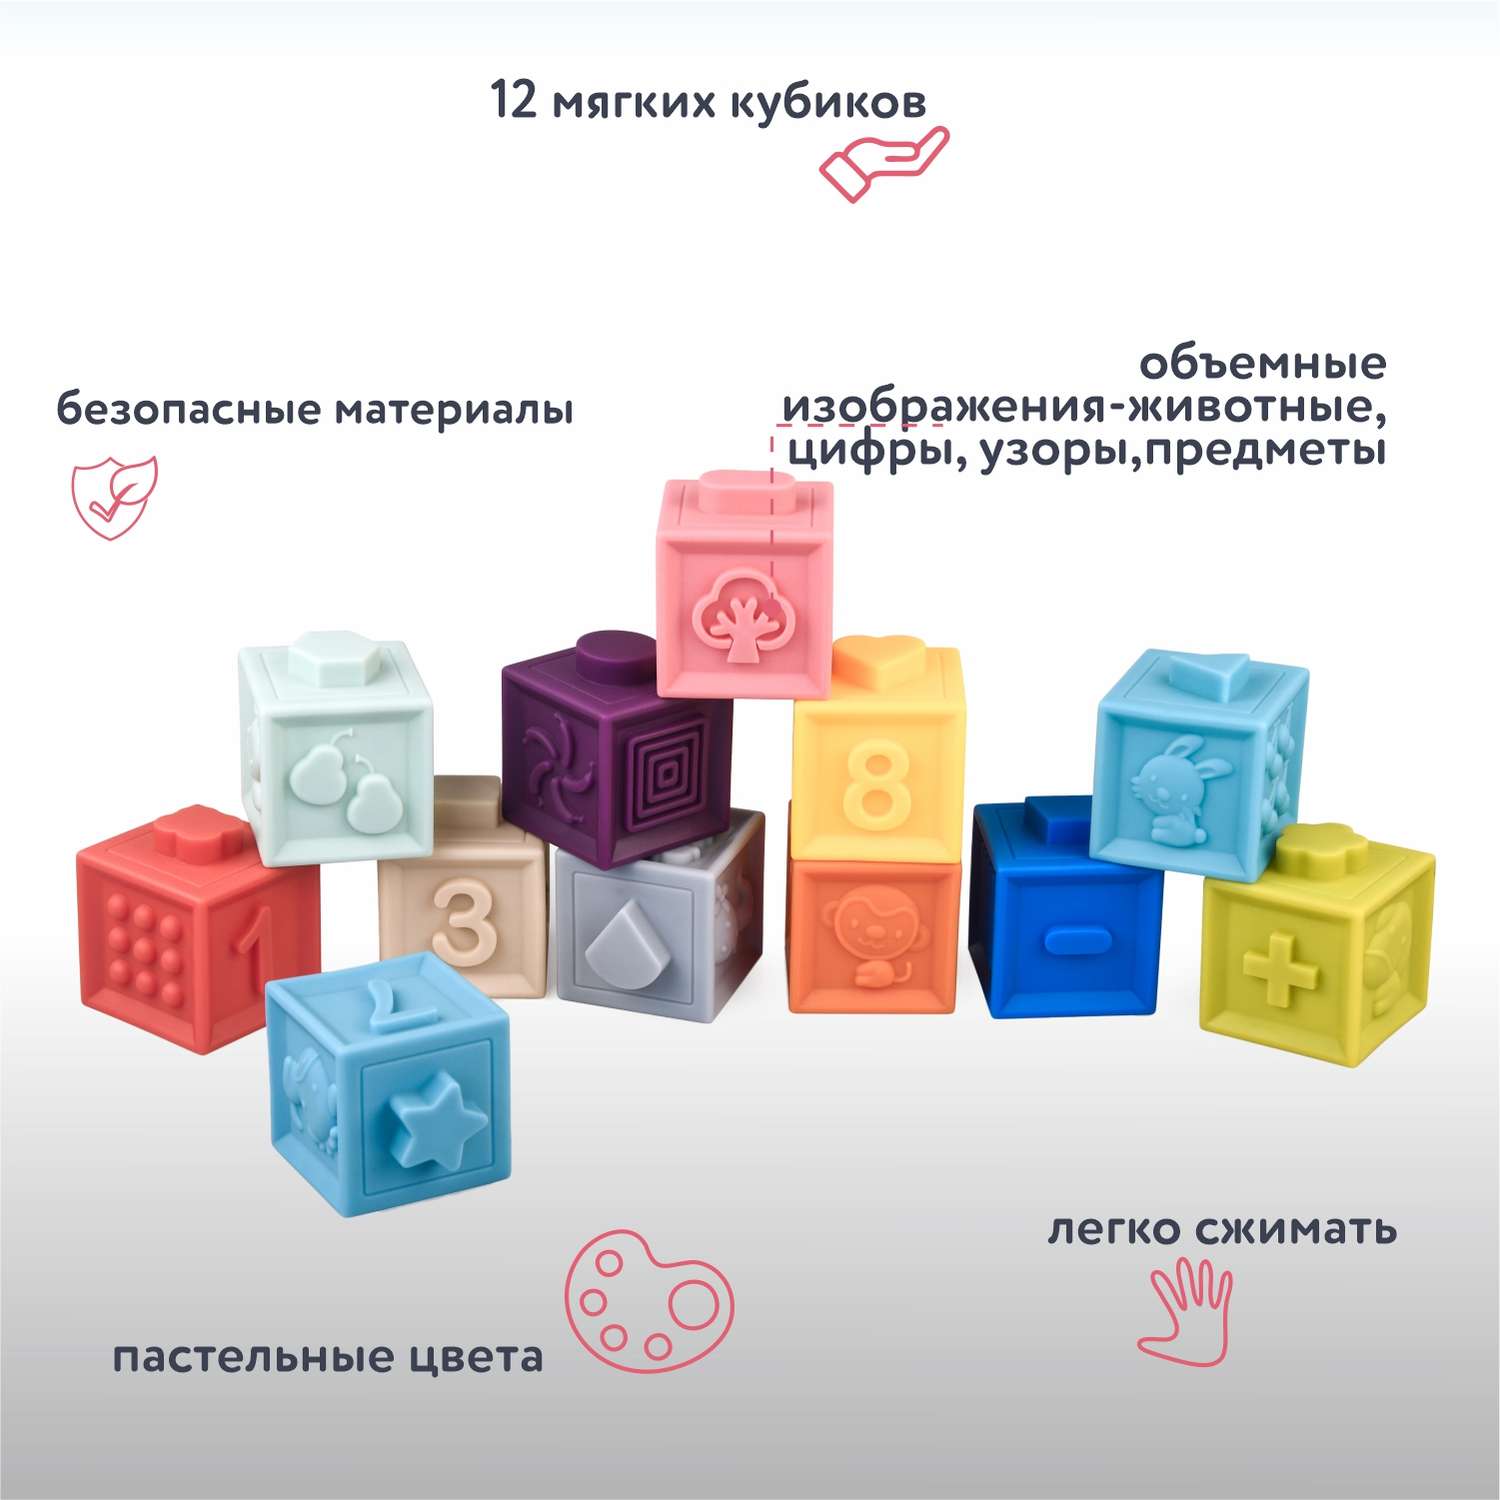 Набор кубиков Kaichi 12предметов OTG0910709 - фото 2